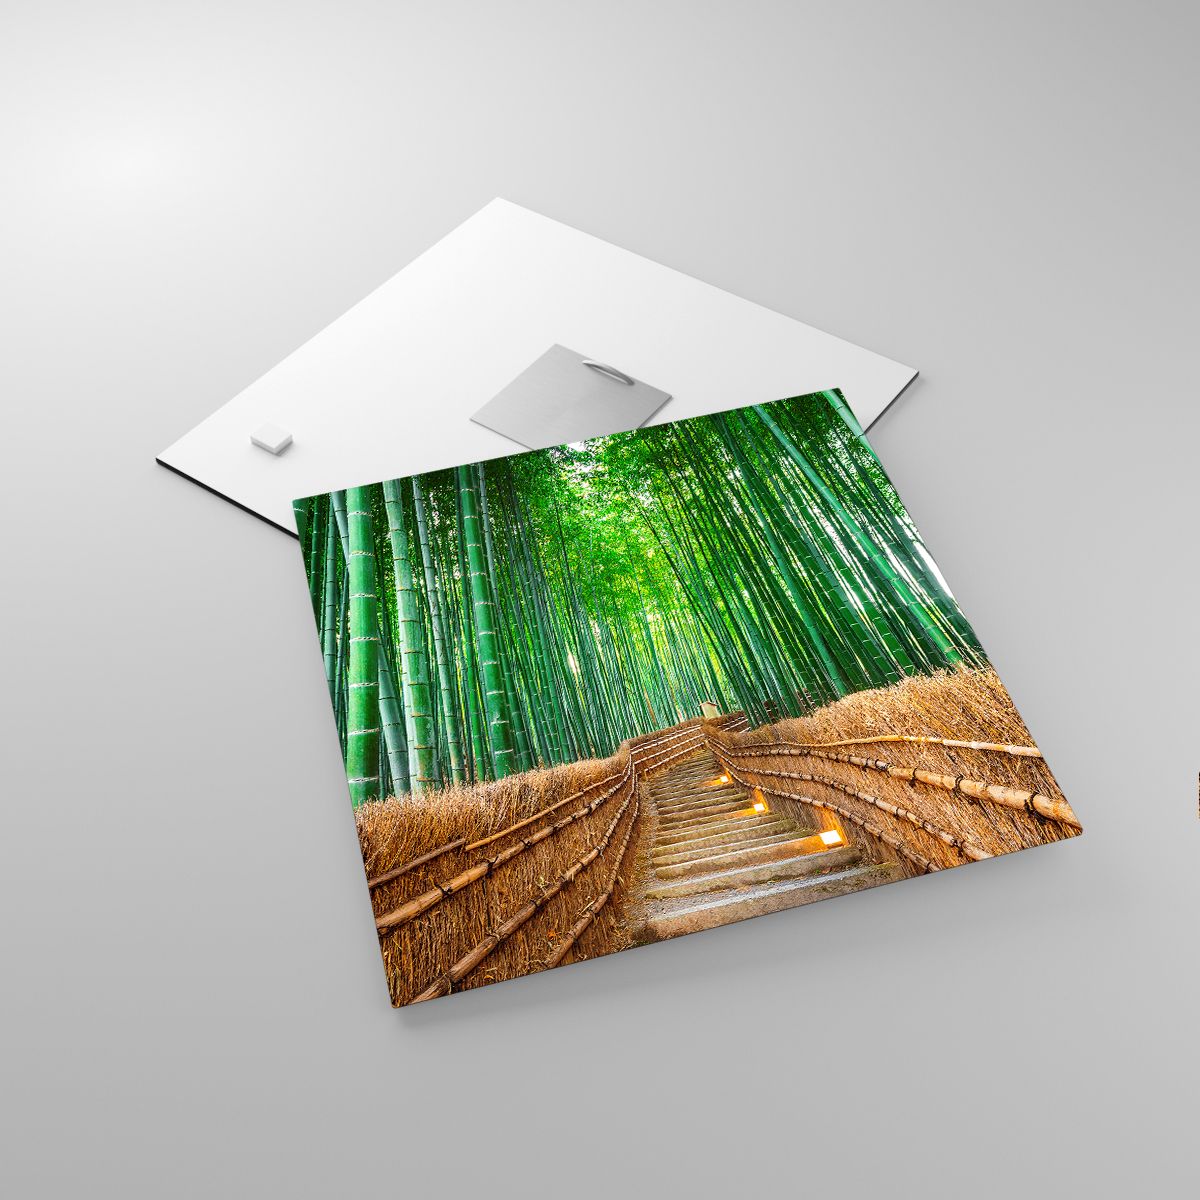 Glasbild Bambus, Glasbild Bambuswald, Glasbild Natur, Glasbild Landschaft, Glasbild Asien